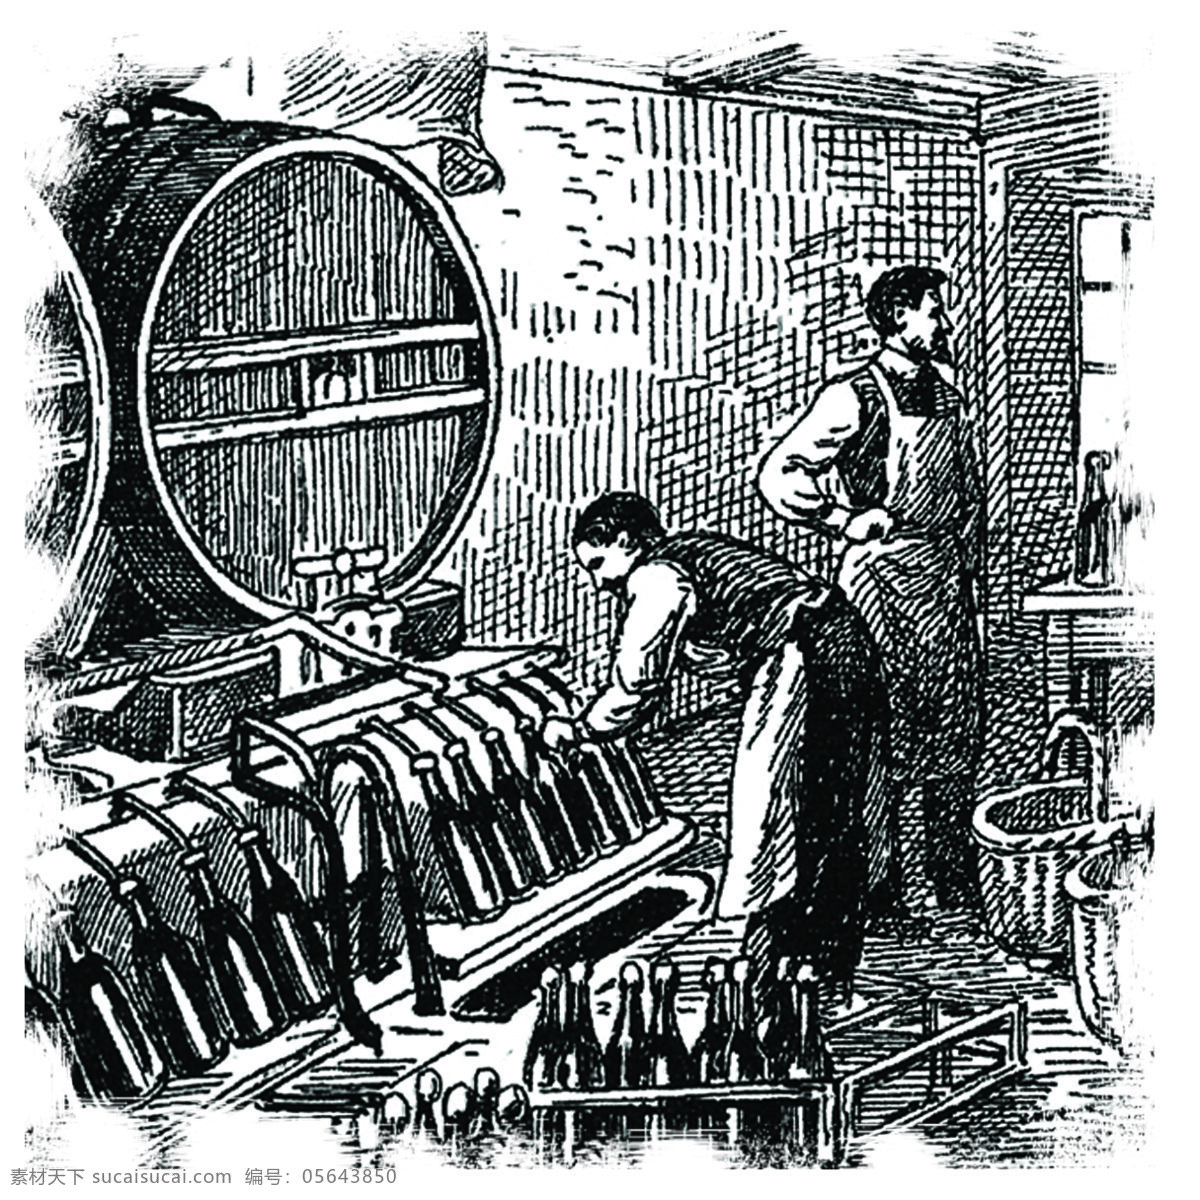 西方 酿酒 过程 图示 西方线描图 西方素描图 酿酒过程图 浇注成品酒 装瓶 葡萄酒酿造 绘画书法 文化艺术